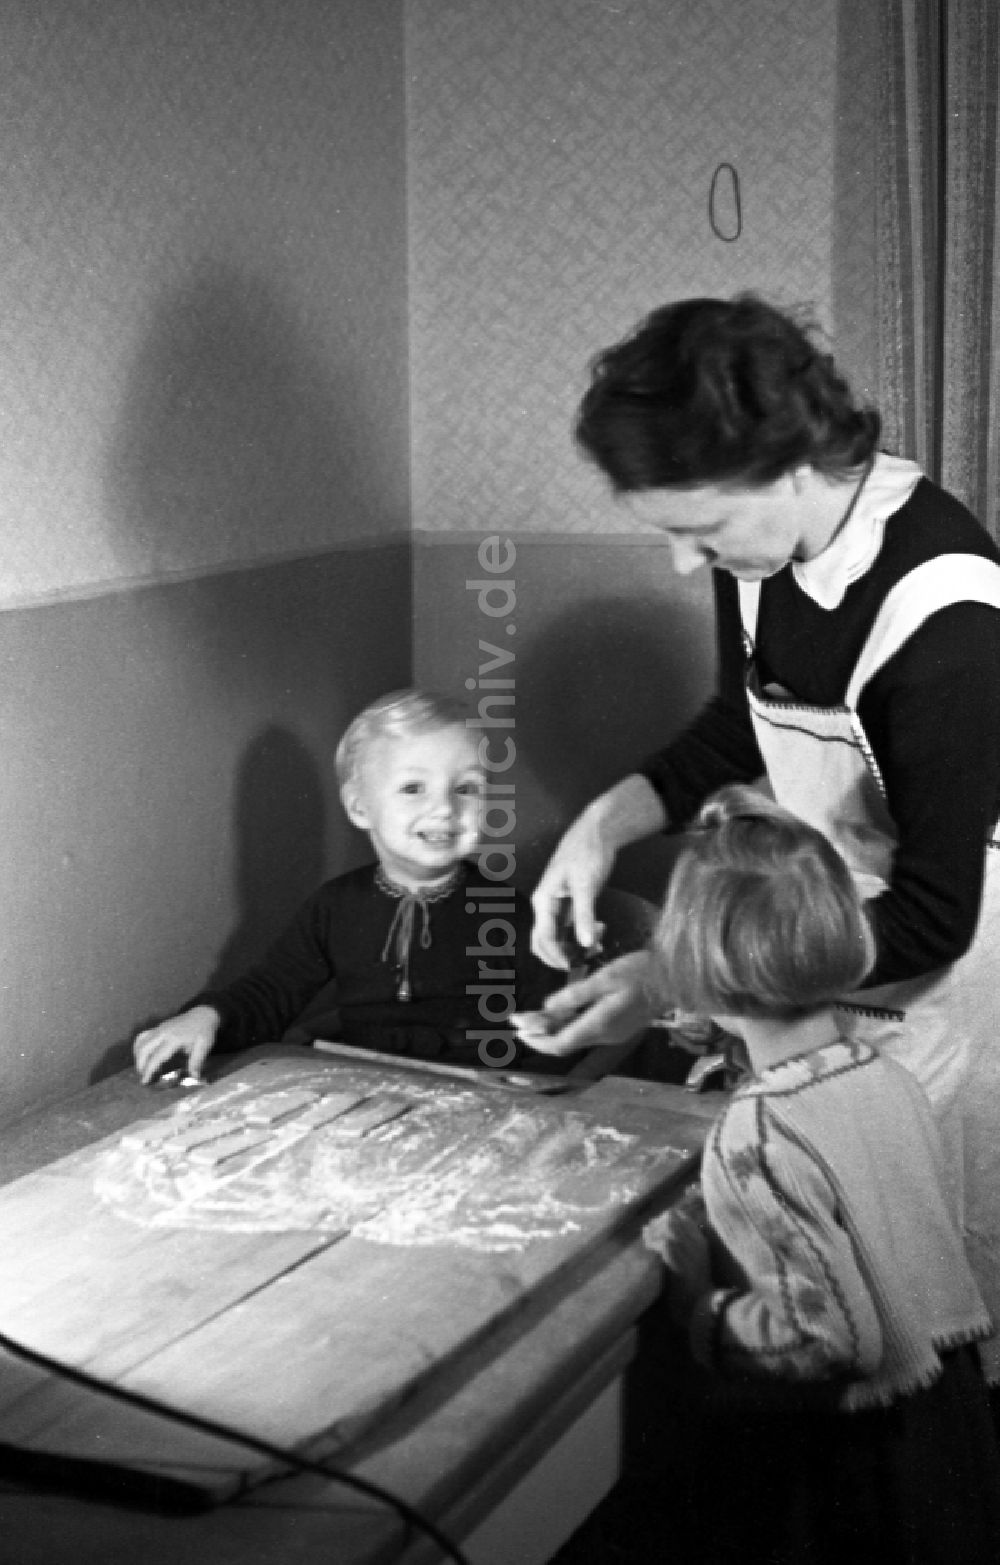 DDR-Fotoarchiv: Merseburg - Kinder beim Plätzchen backen in Merseburg in Sachsen-Anhalt in der DDR